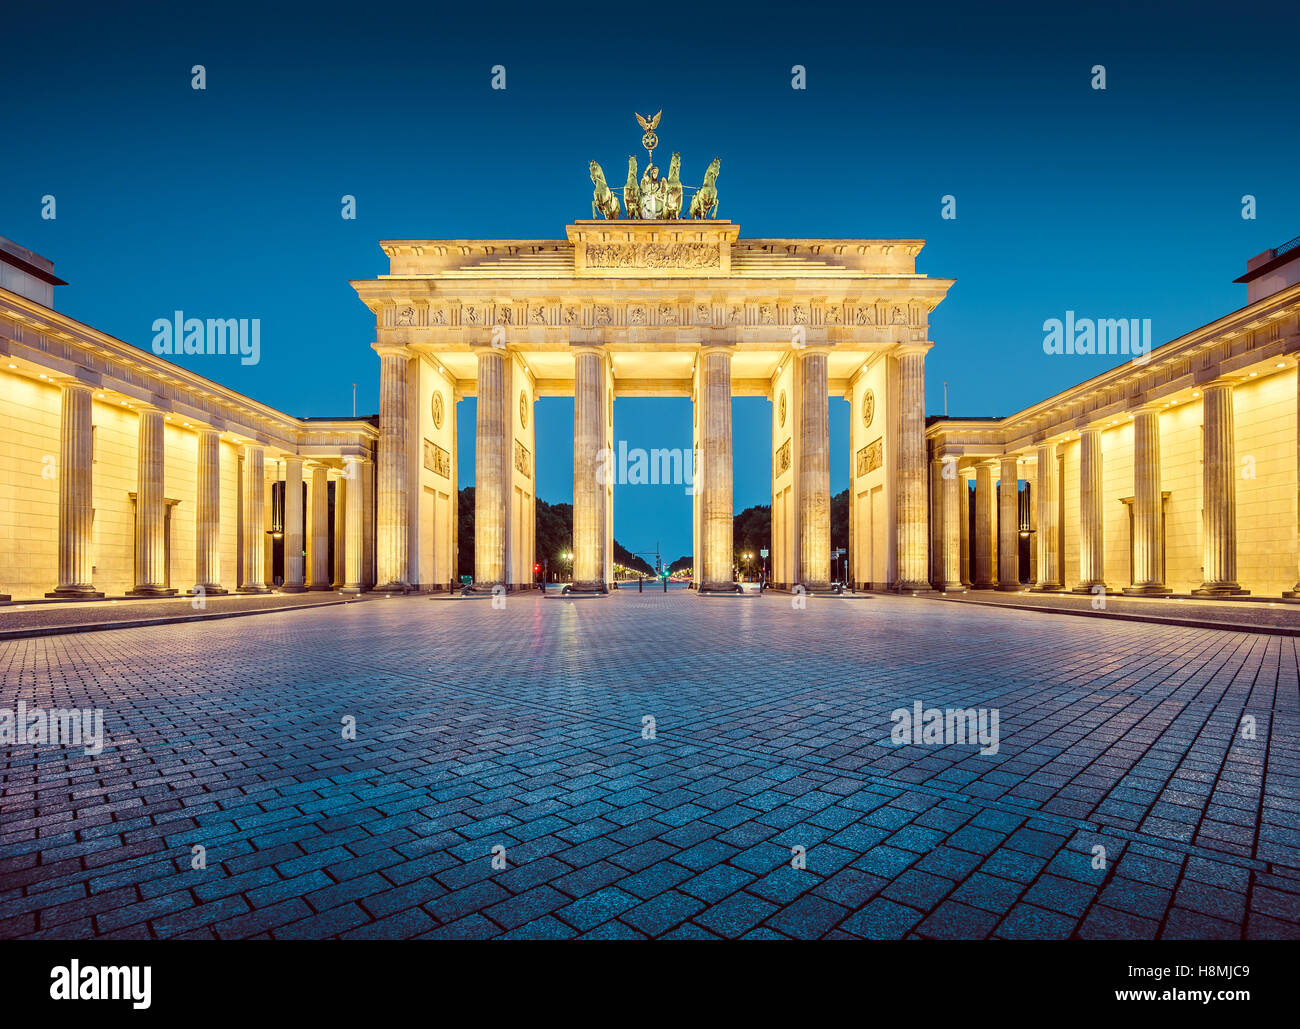 Vista clásica de la famosa Puerta de Brandenburgo en penumbra, el centro de Berlín, Alemania Foto de stock